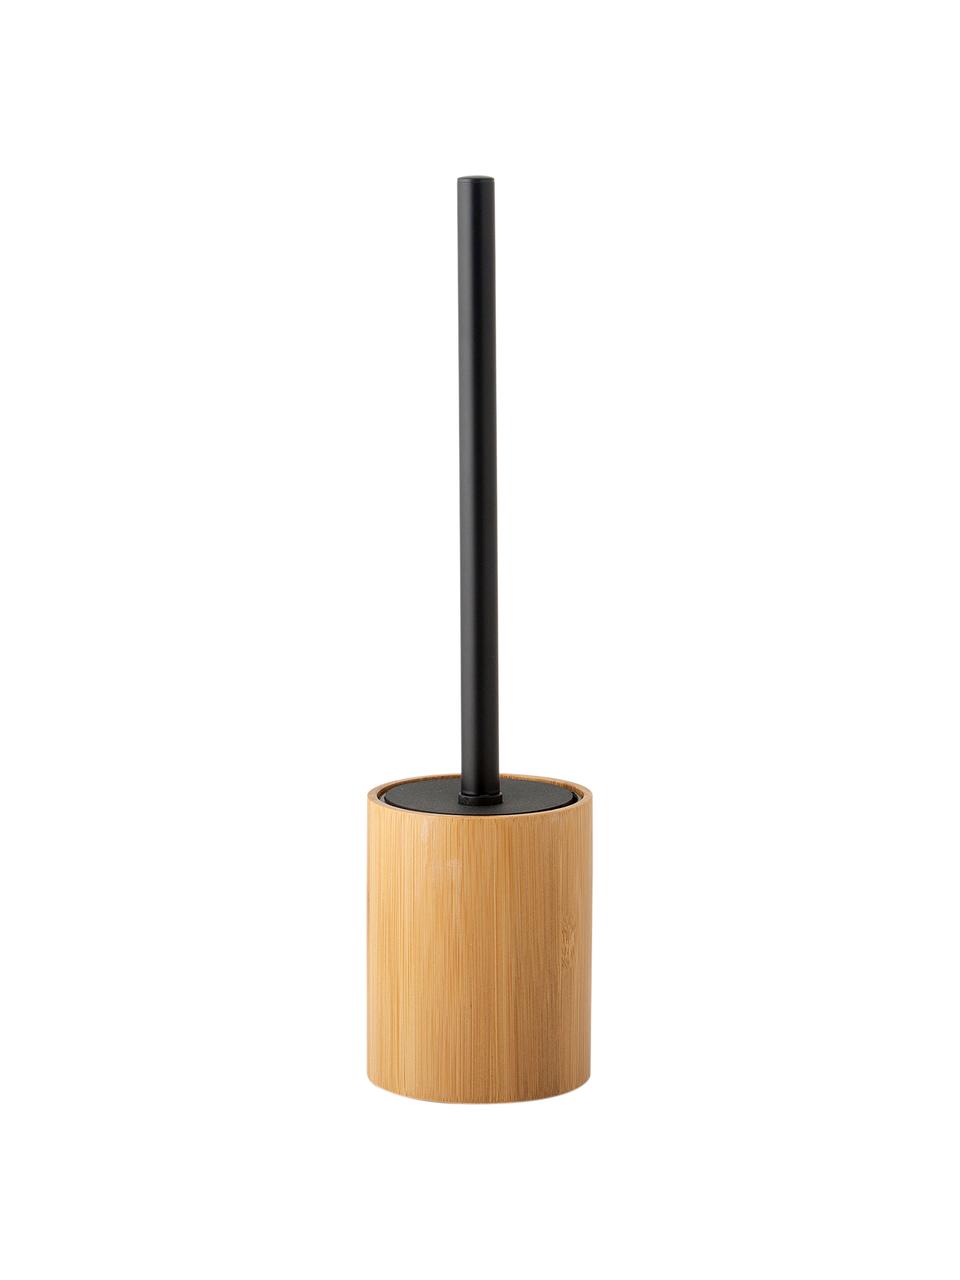 Toilettenbürste Beckton, Behälter: Bambus, Griff: Metall, Bambus, Schwarz, Ø 9 x H 38 cm